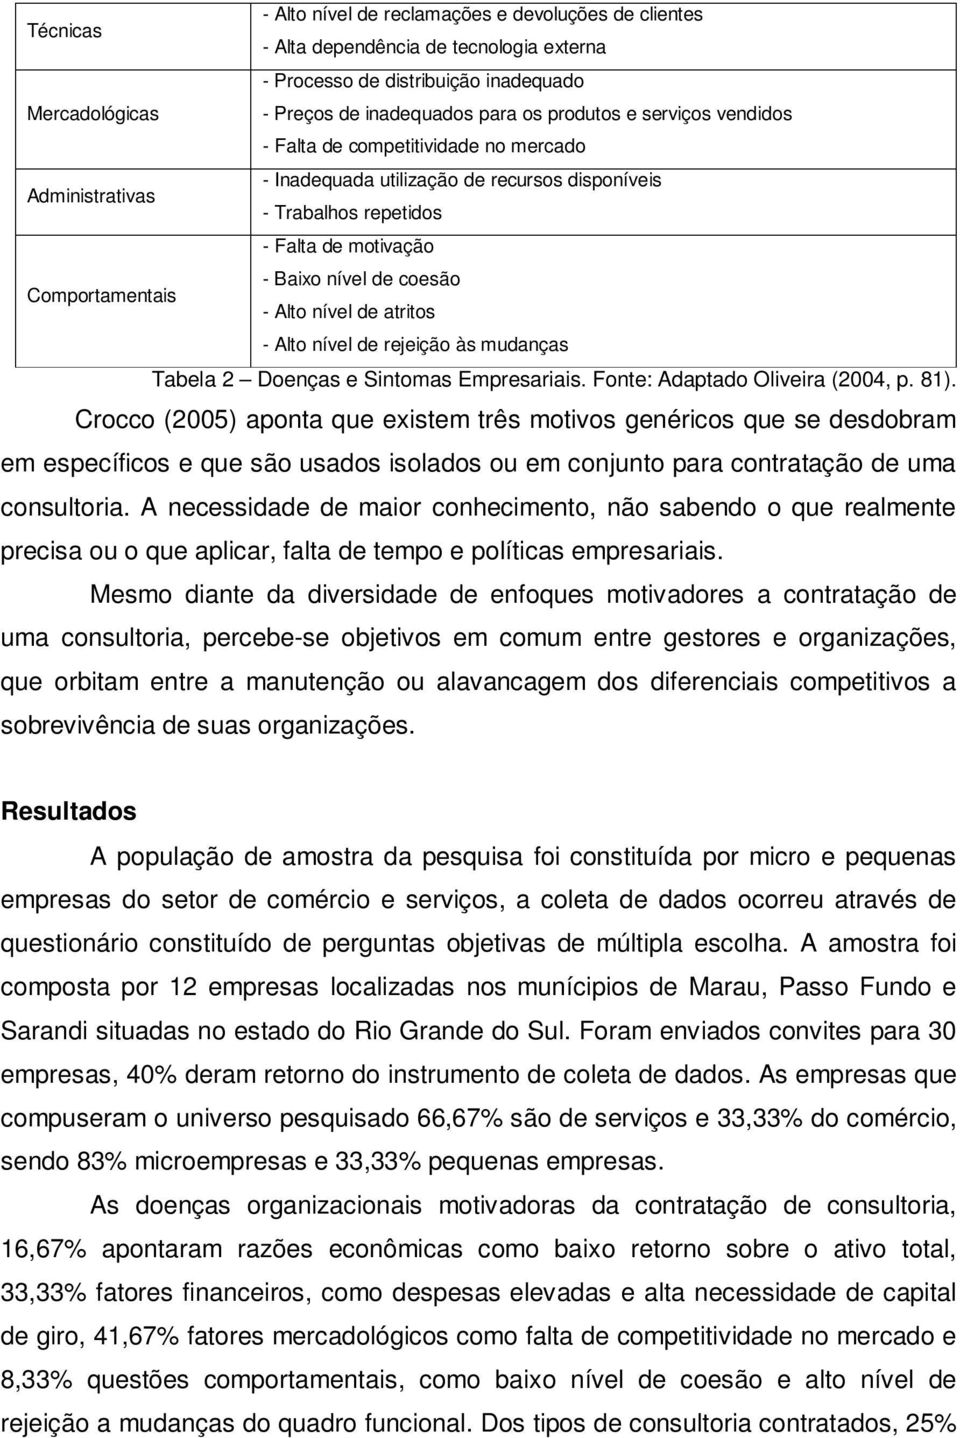 Comportamentais - Alto nível de atritos - Alto nível de rejeição às mudanças Tabela 2 Doenças e Sintomas Empresariais. Fonte: Adaptado Oliveira (2004, p. 81).